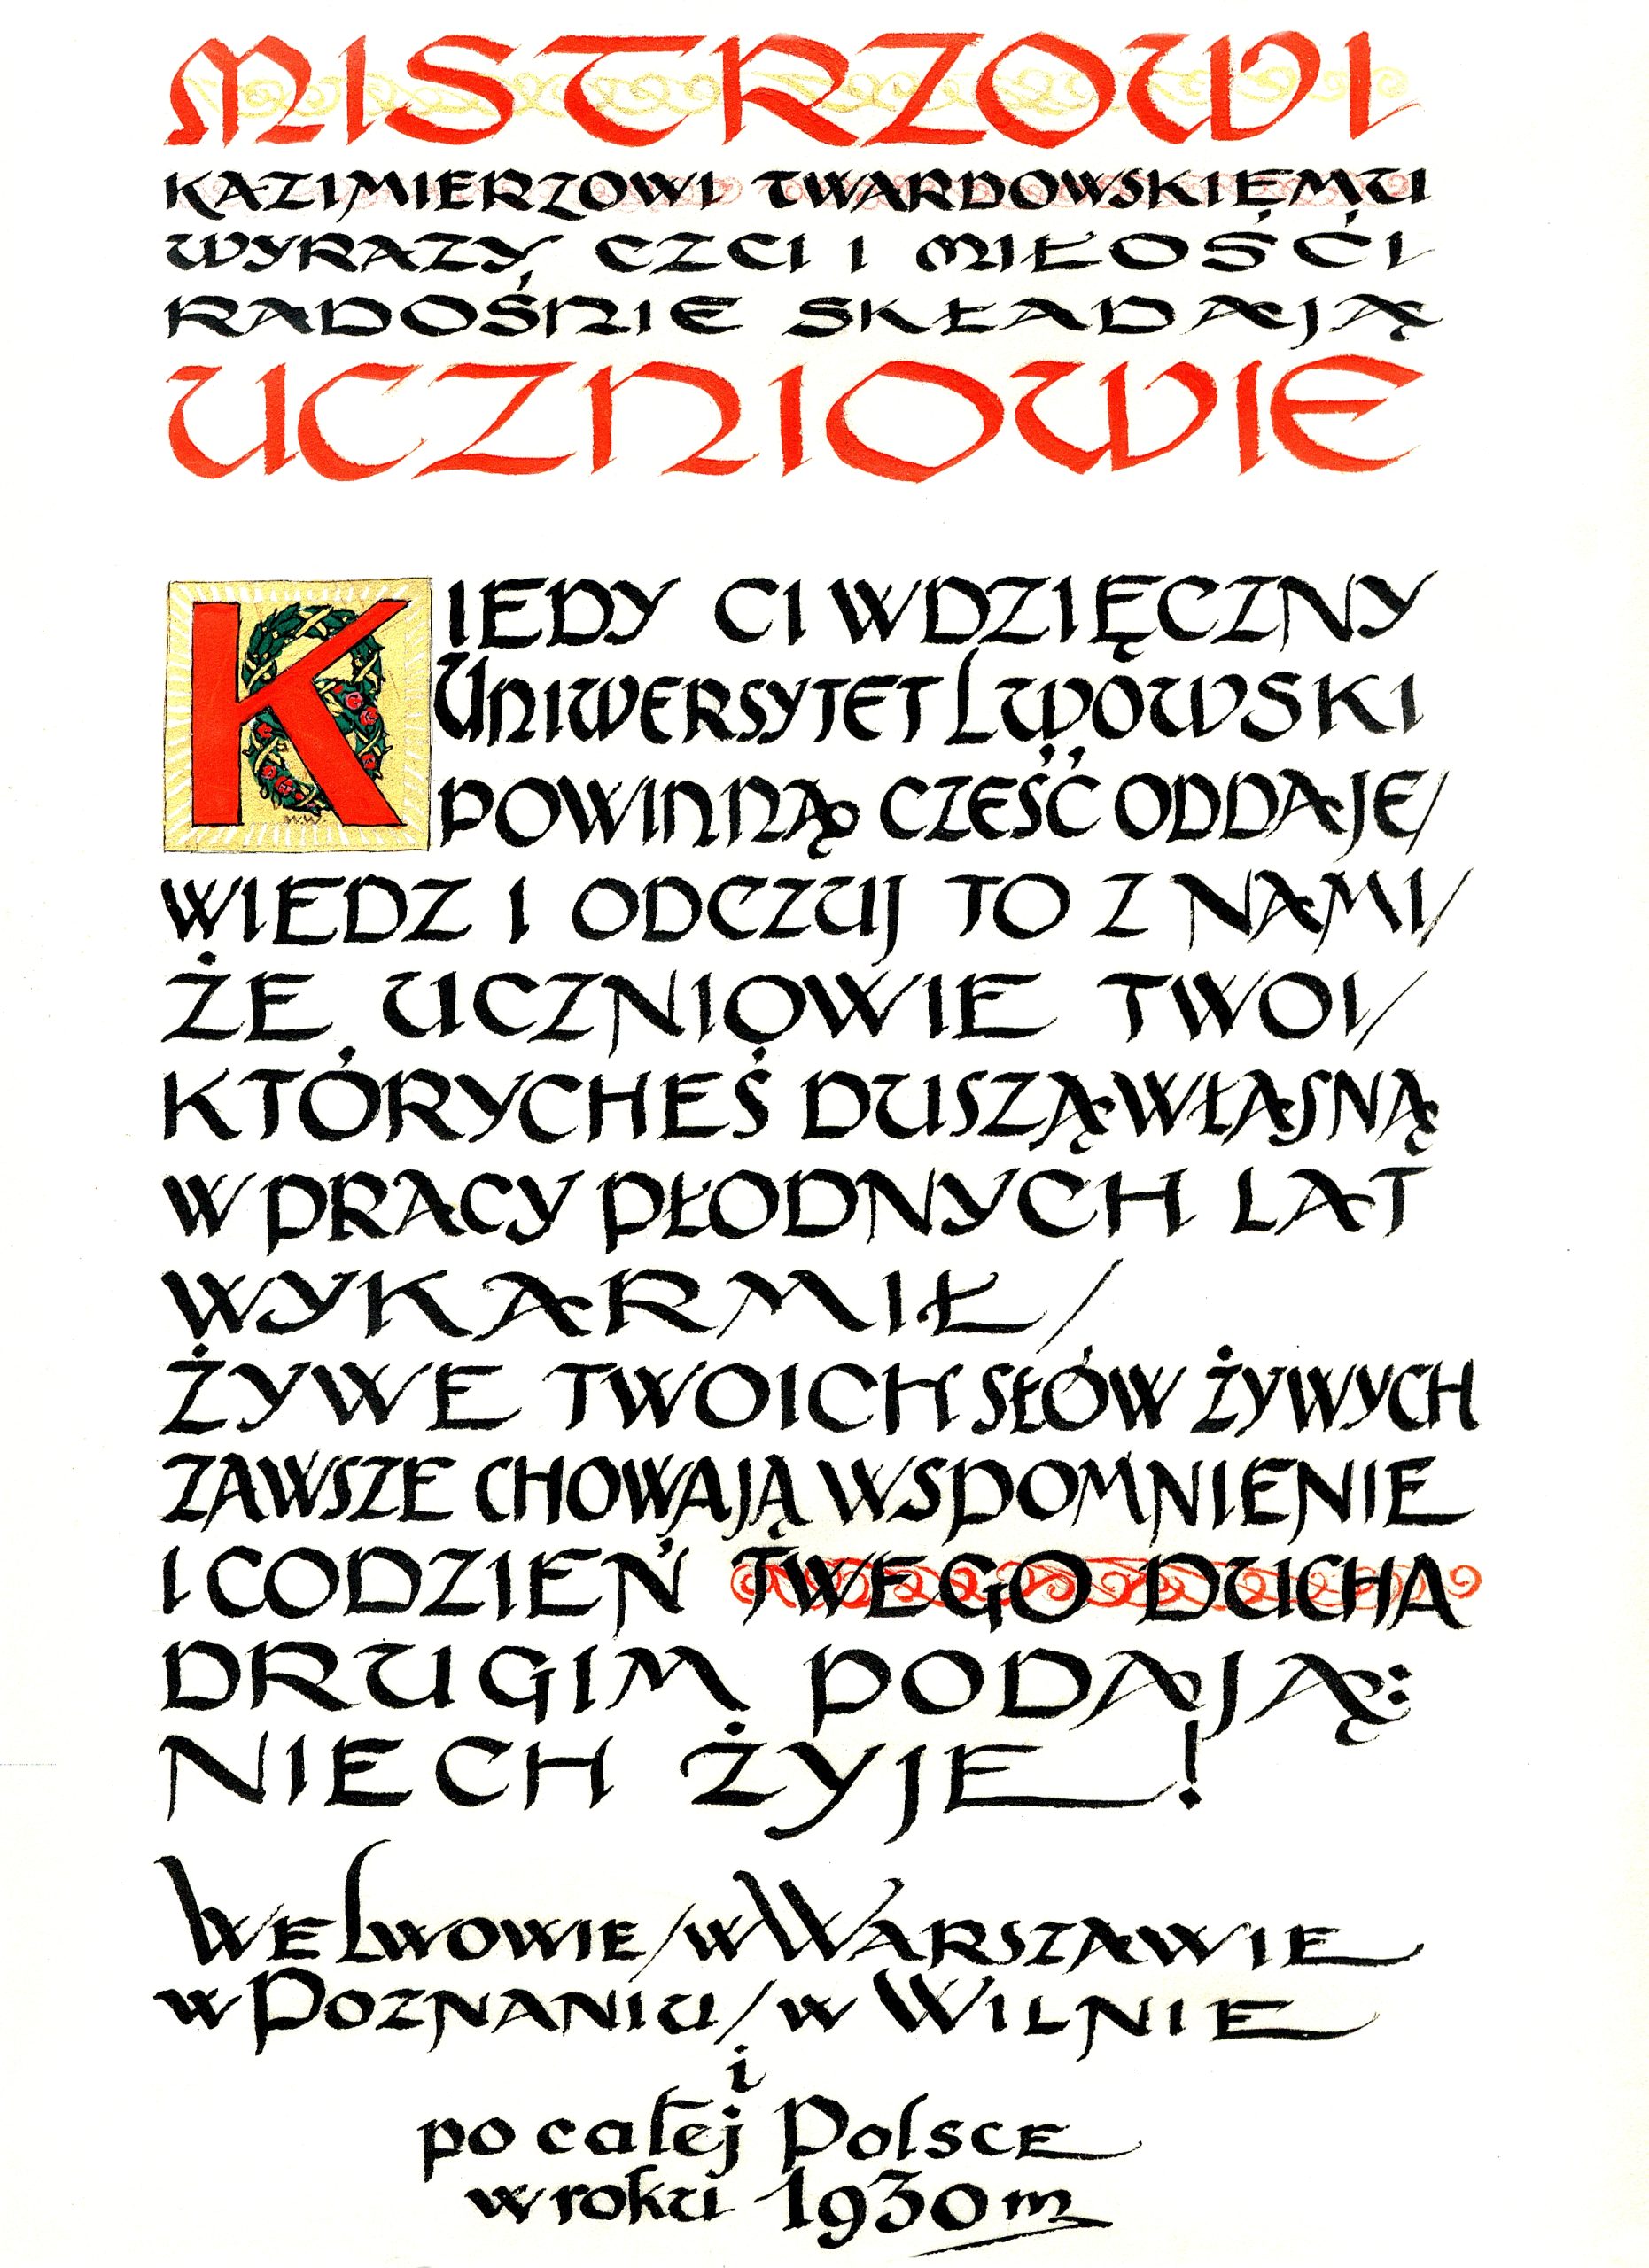 Życzenia od uczniów z okazji nadania profesury honorowej Uniwersytetu Lwowskiego (1930)